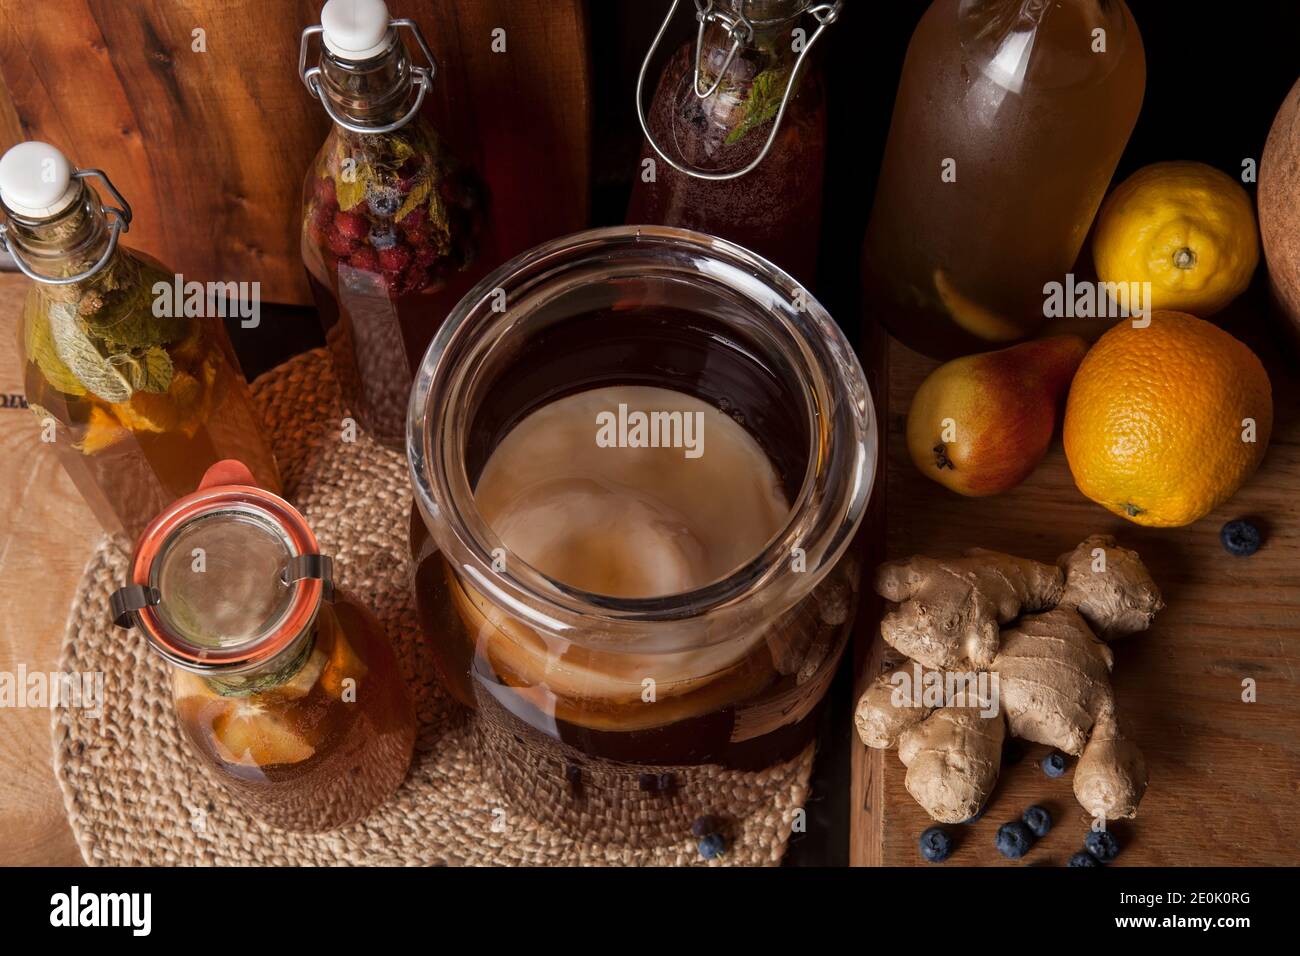 Kombucha (también setas de té, hongos de té, o hongos manchurianos) - té de frutas fermentadas con diferentes sabores. Saludable probiótico natural con sabor Foto de stock